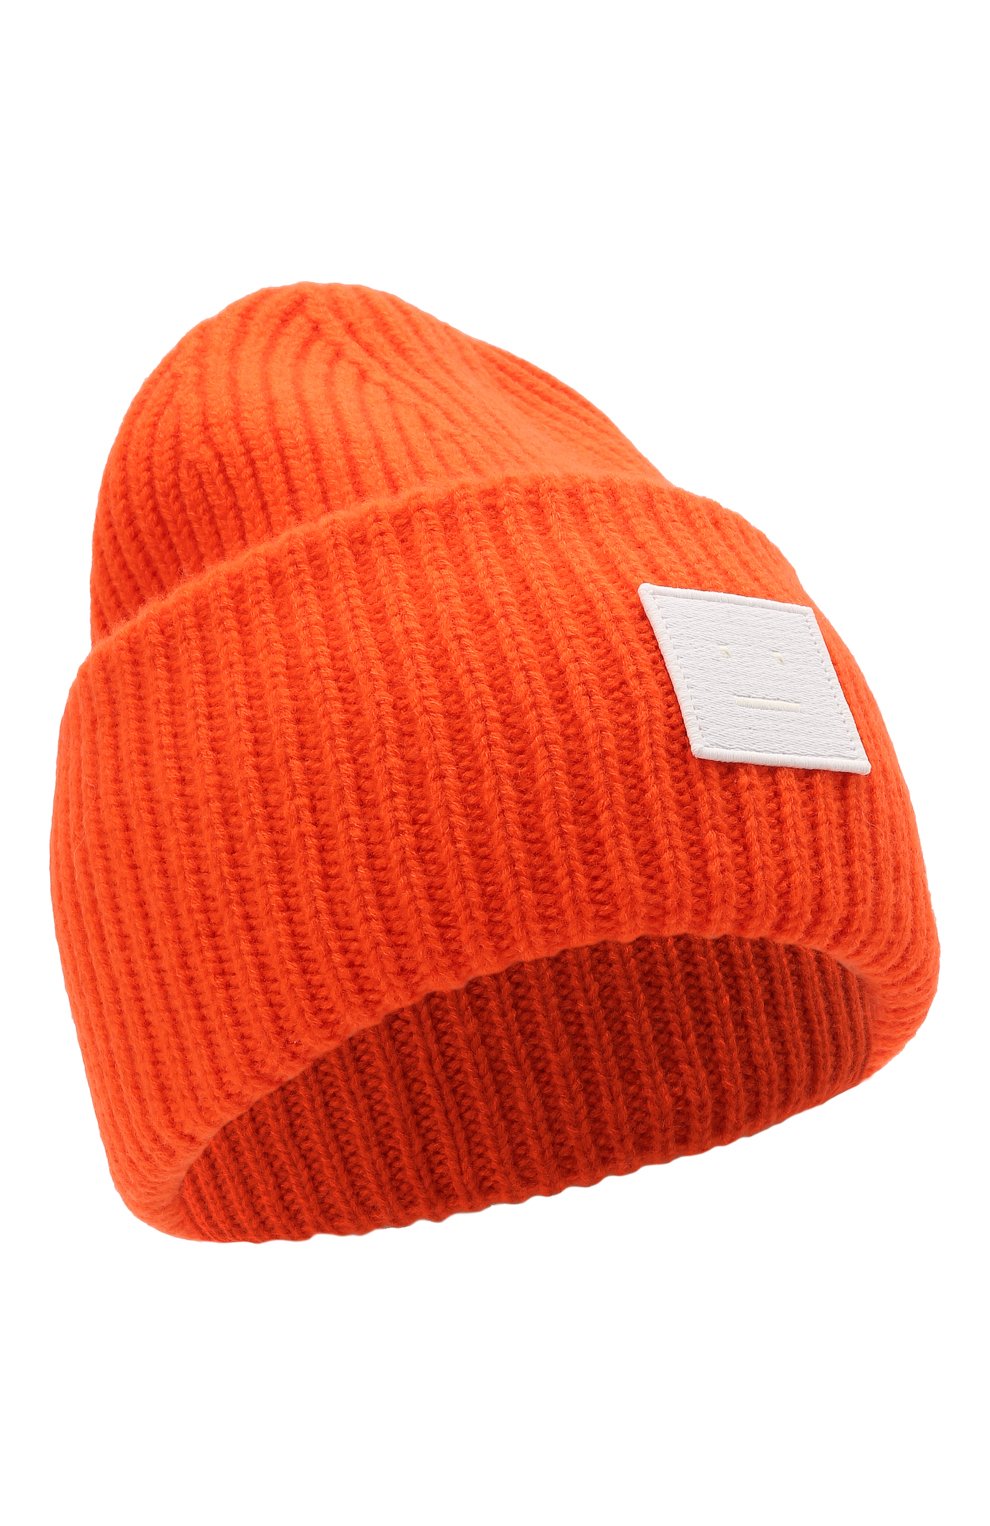 Мужская шерстяная шапка ACNE STUDIOS оранжевого цвета, арт. C40135/M | Фото 1 (Материал: Текстиль, Шерсть; Кросс-КТ: Трикотаж)